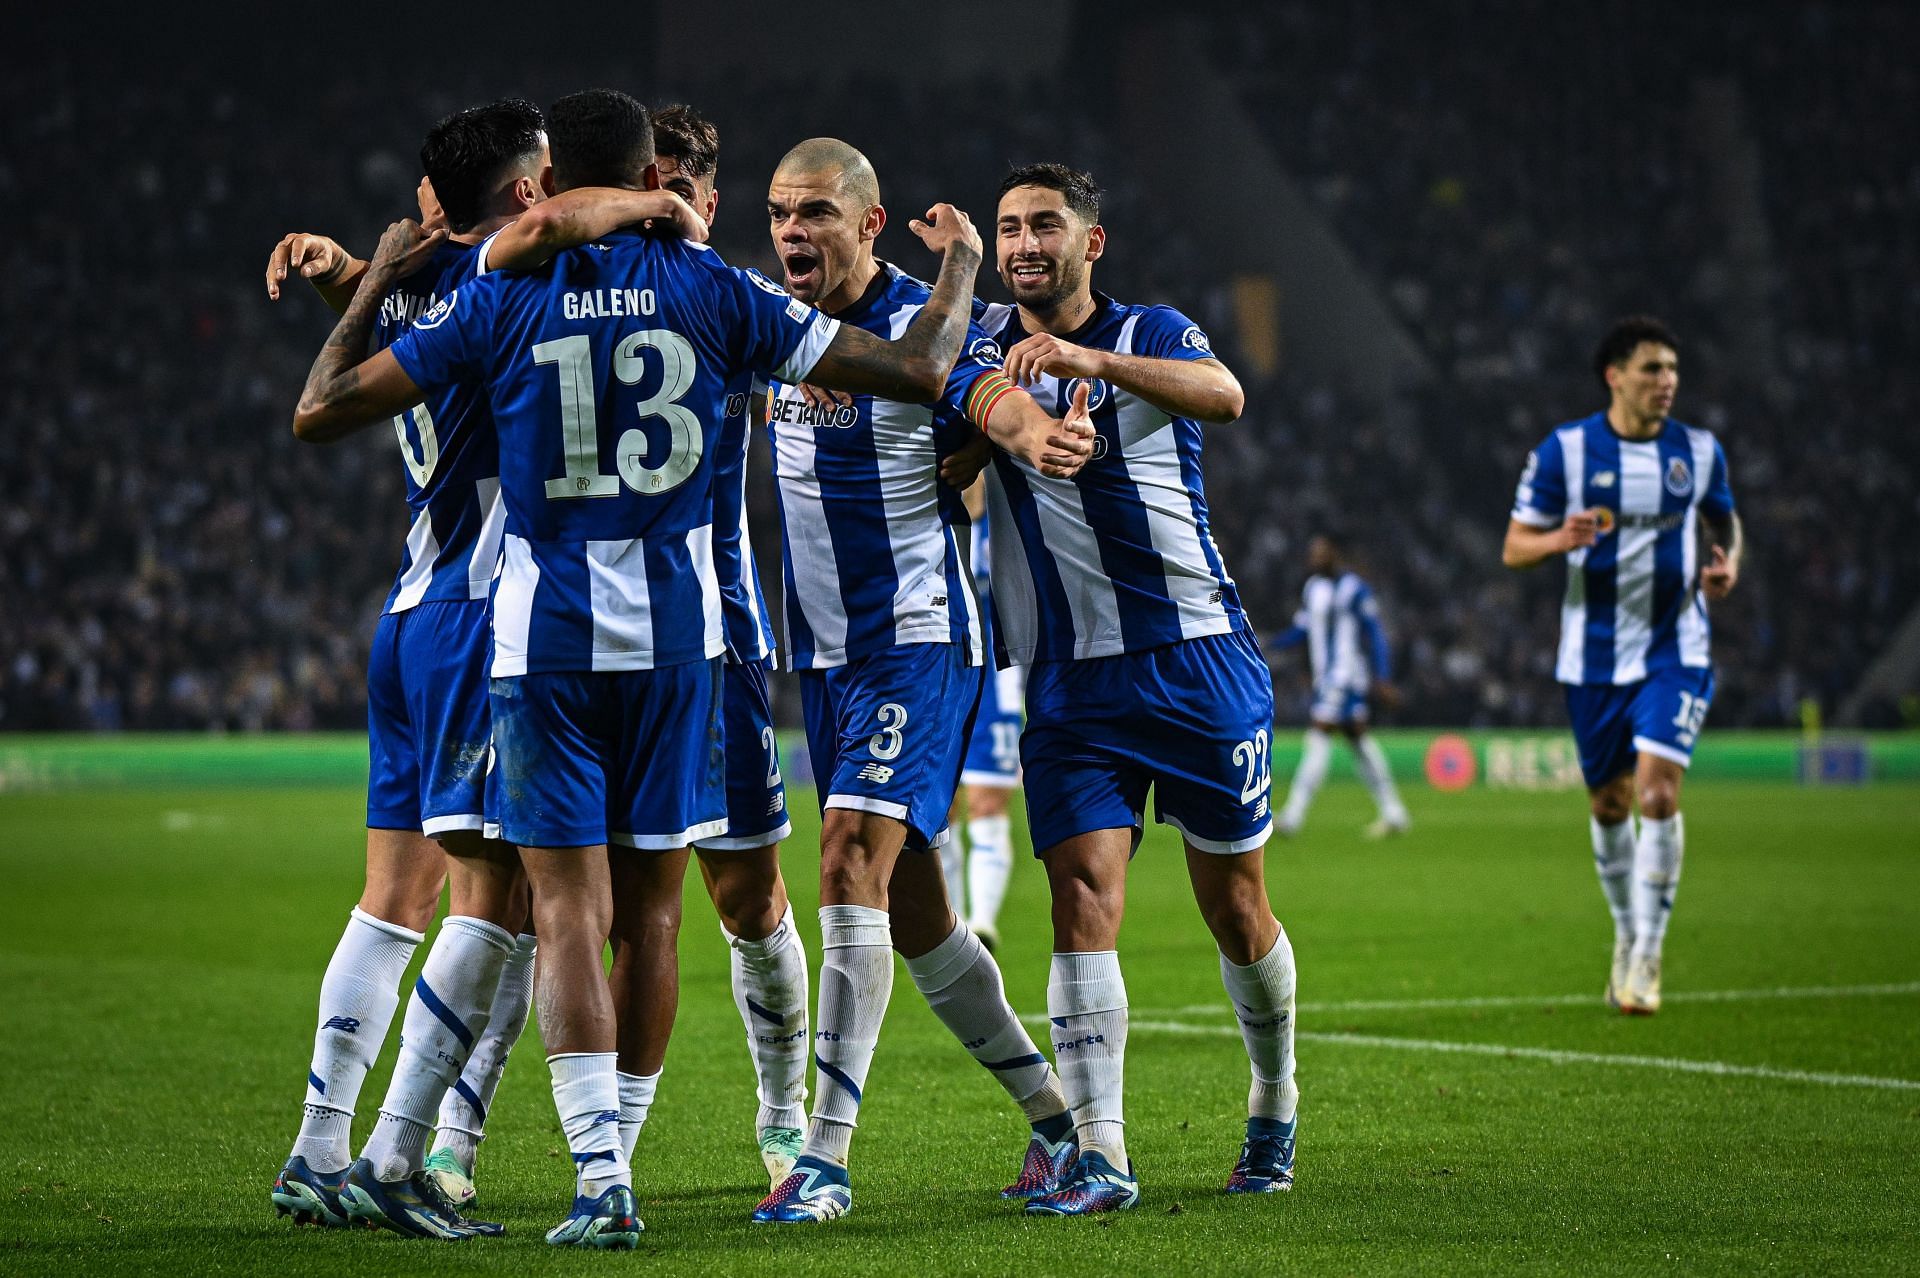 Profile: Quarter-final opponents FC Porto